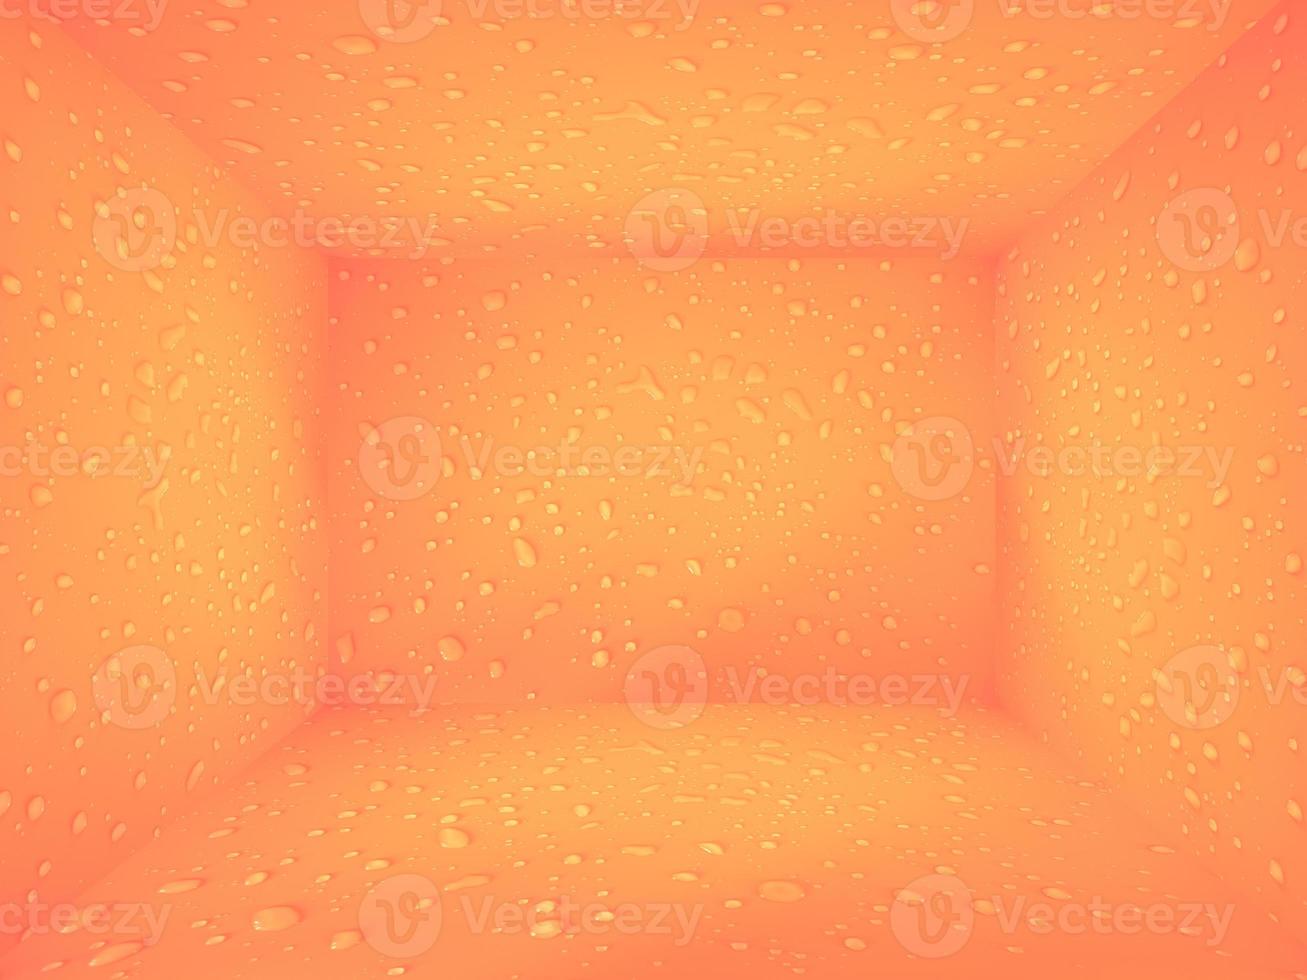 Wassertropfen auf orangefarbenem Raum für Vitrinenhintergrund. Wassertropfen führen den Hintergrund einzeln auf. wasserspritzer, wassersprayhintergrund. ruhiger orangefarbener Hintergrund mit Wassertropfen. foto